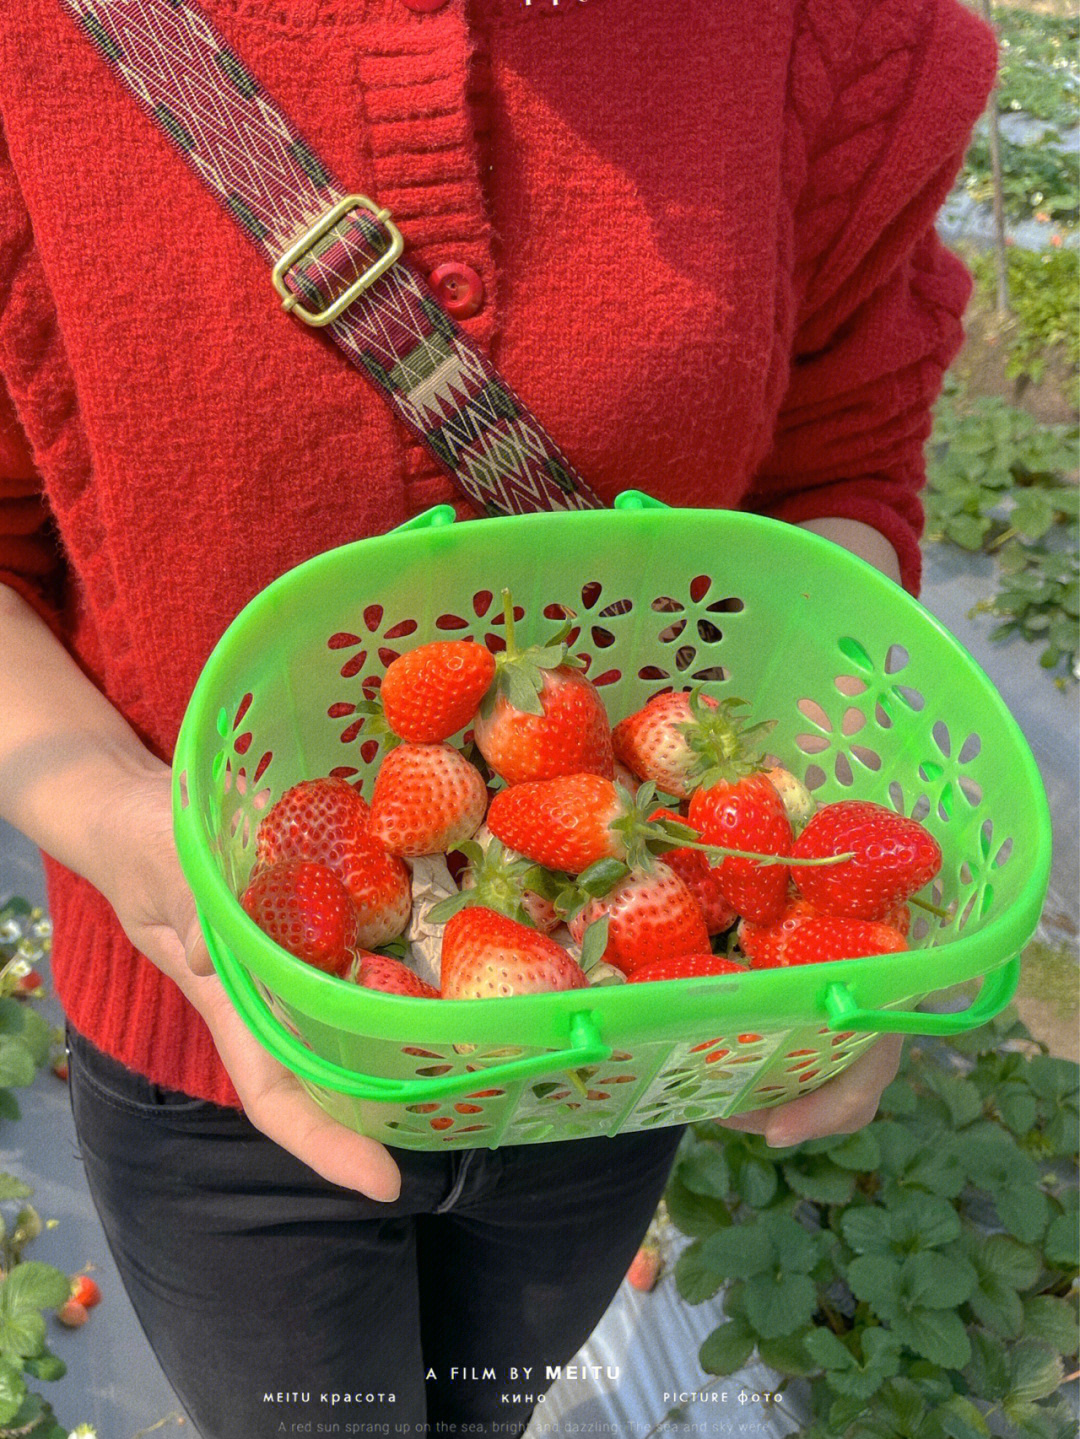 厦门岛内也摘草莓耶